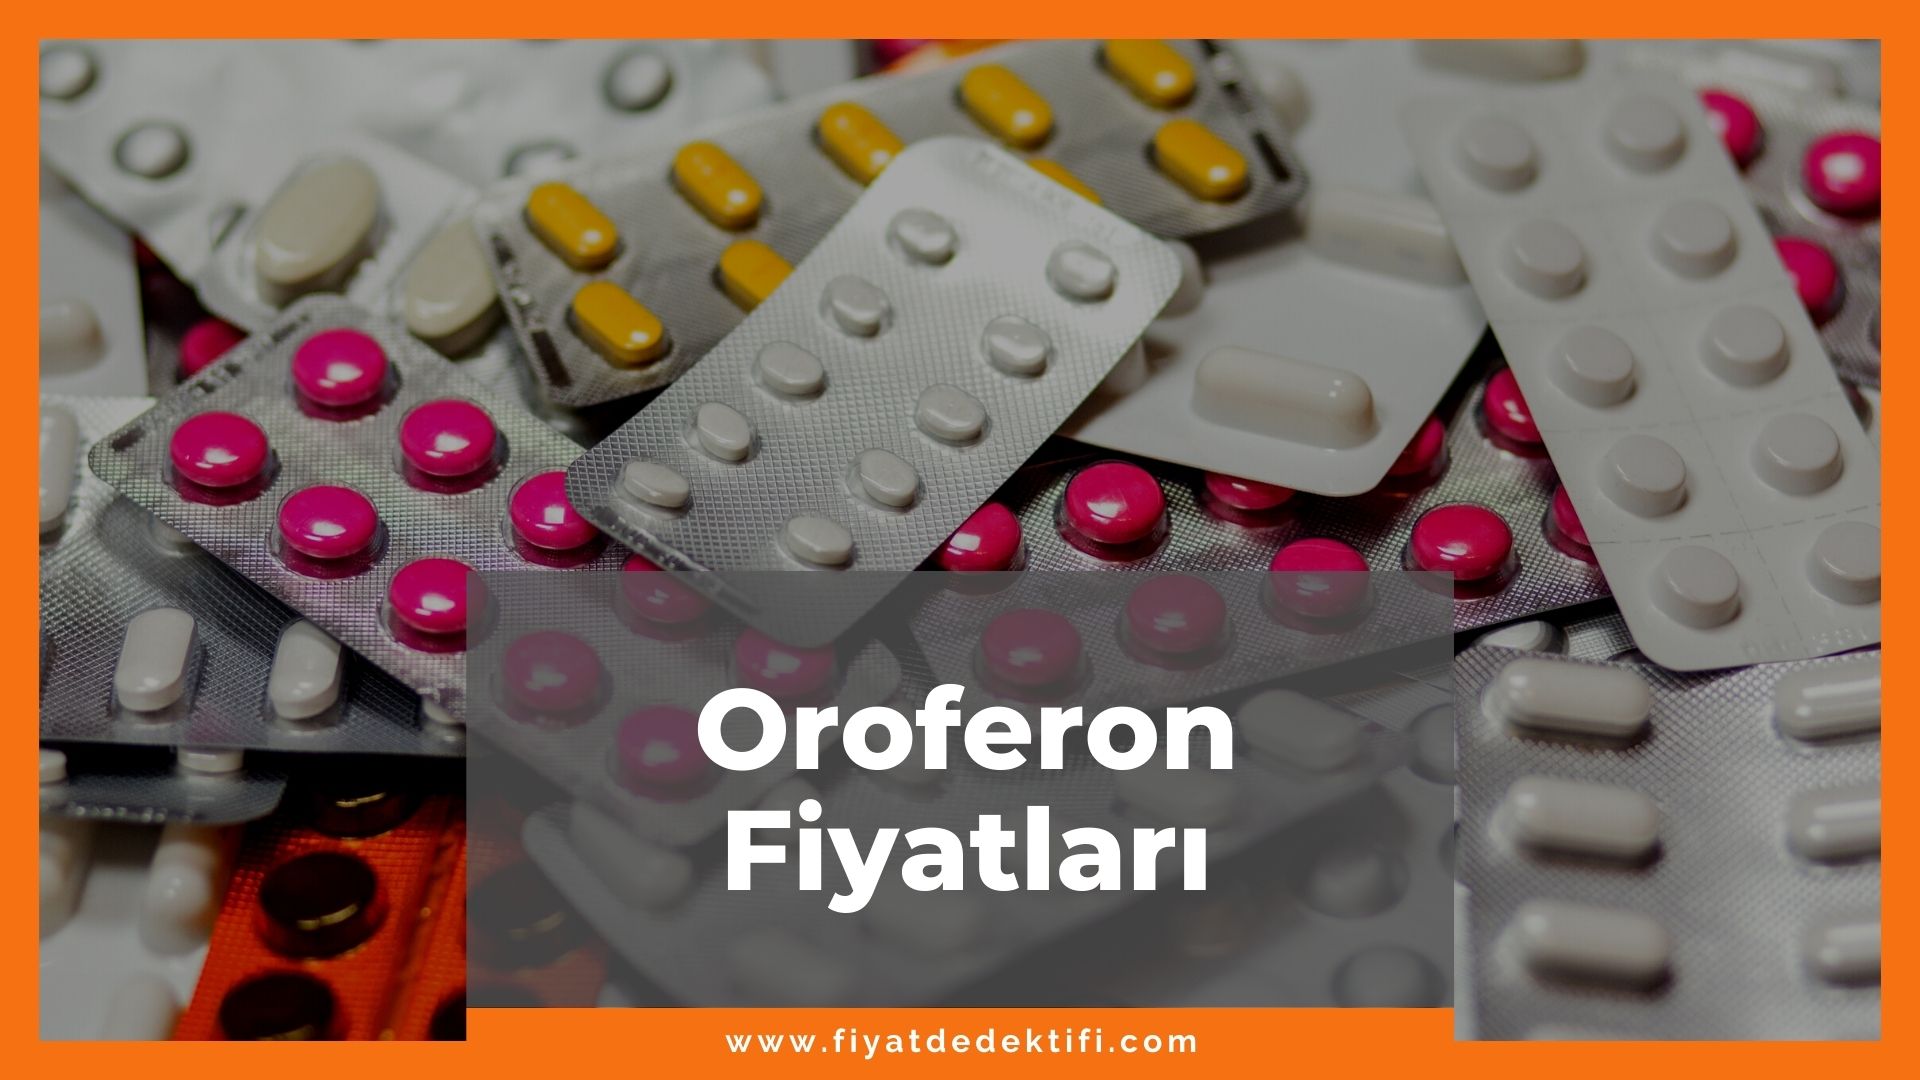 Oroferon Fiyat 2021, Oroferon Fiyatı, Oroferon Draje Fiyatı, oroferon zamlandı mı, oroferon zamlı fiyat ne kadar kaç tl oldu